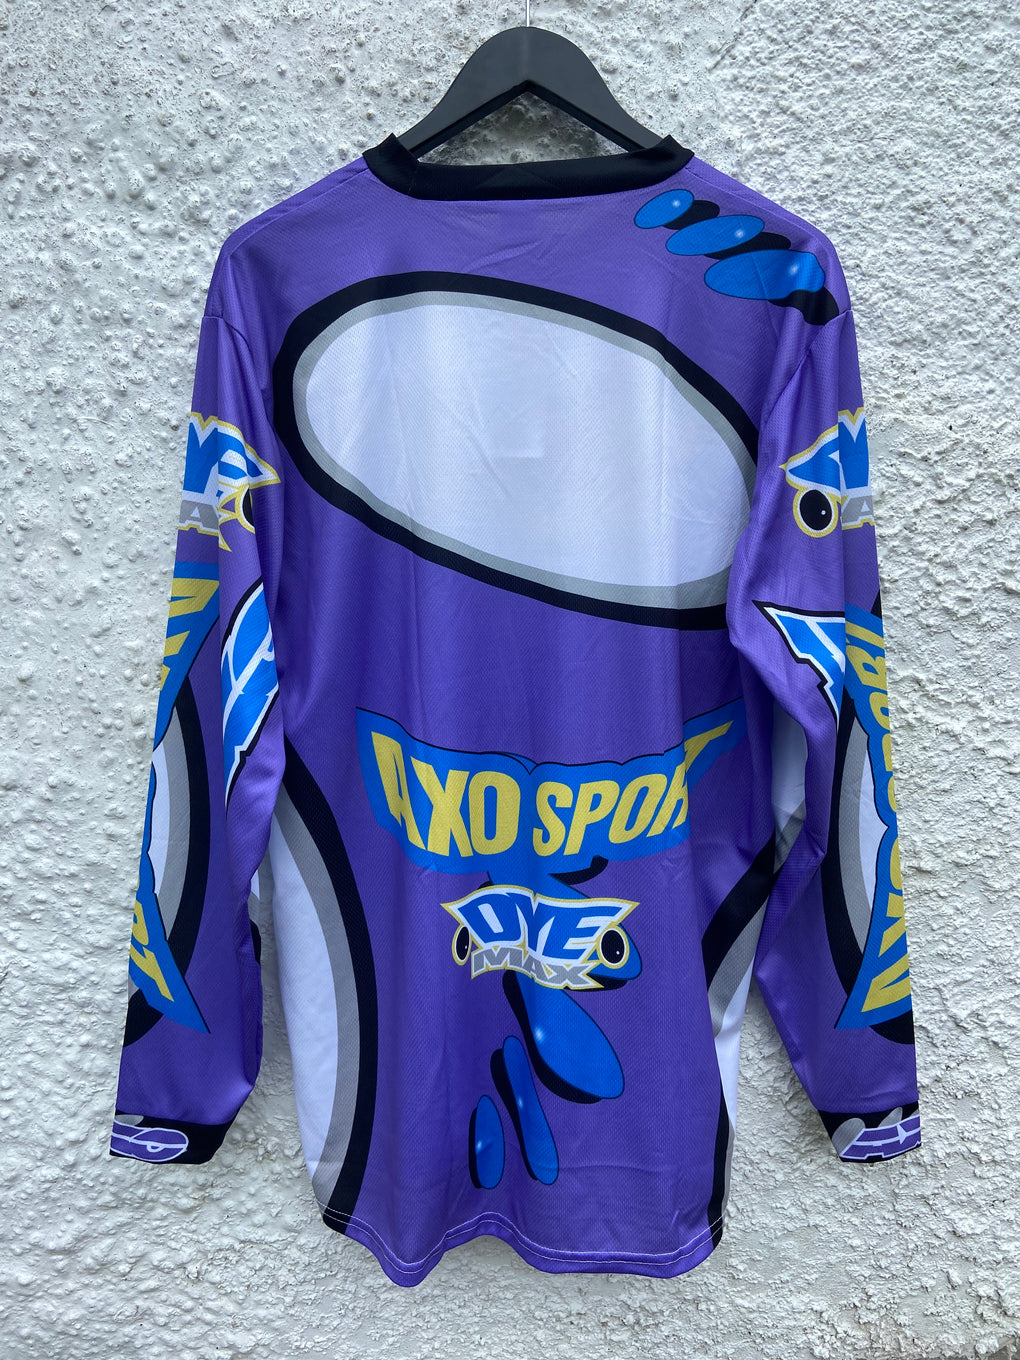 AXO Sport Moto X Jersey